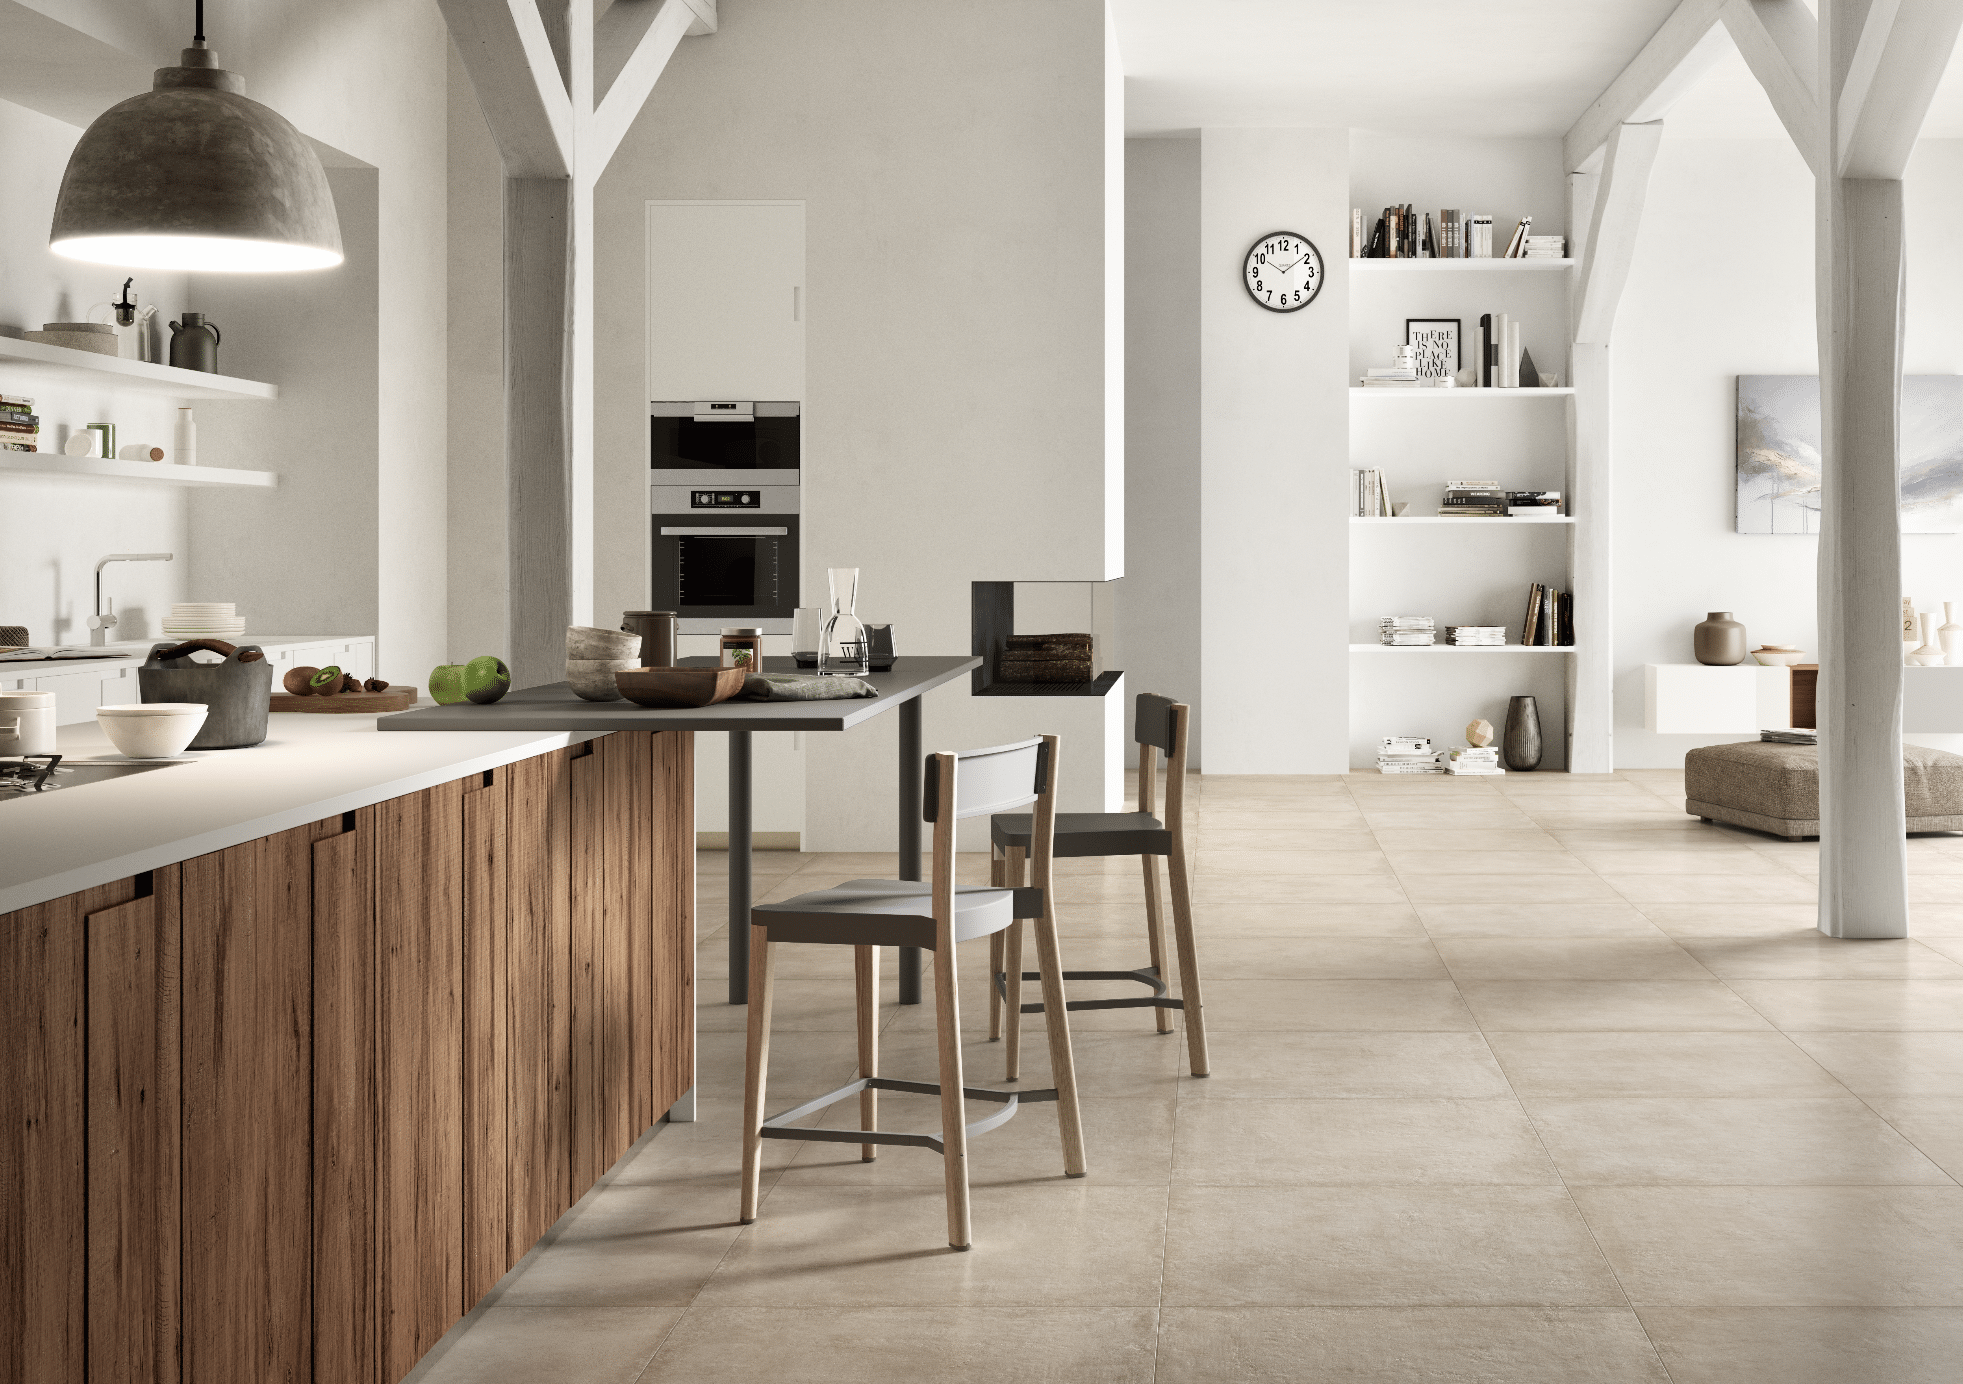 C. Bergmann zeigt eine weisse Küche mit Holzelementen, hellem Fliesenboden und Essbereich mit grauer Tischplatte und grauen hohen Stühlen von Marazzi.